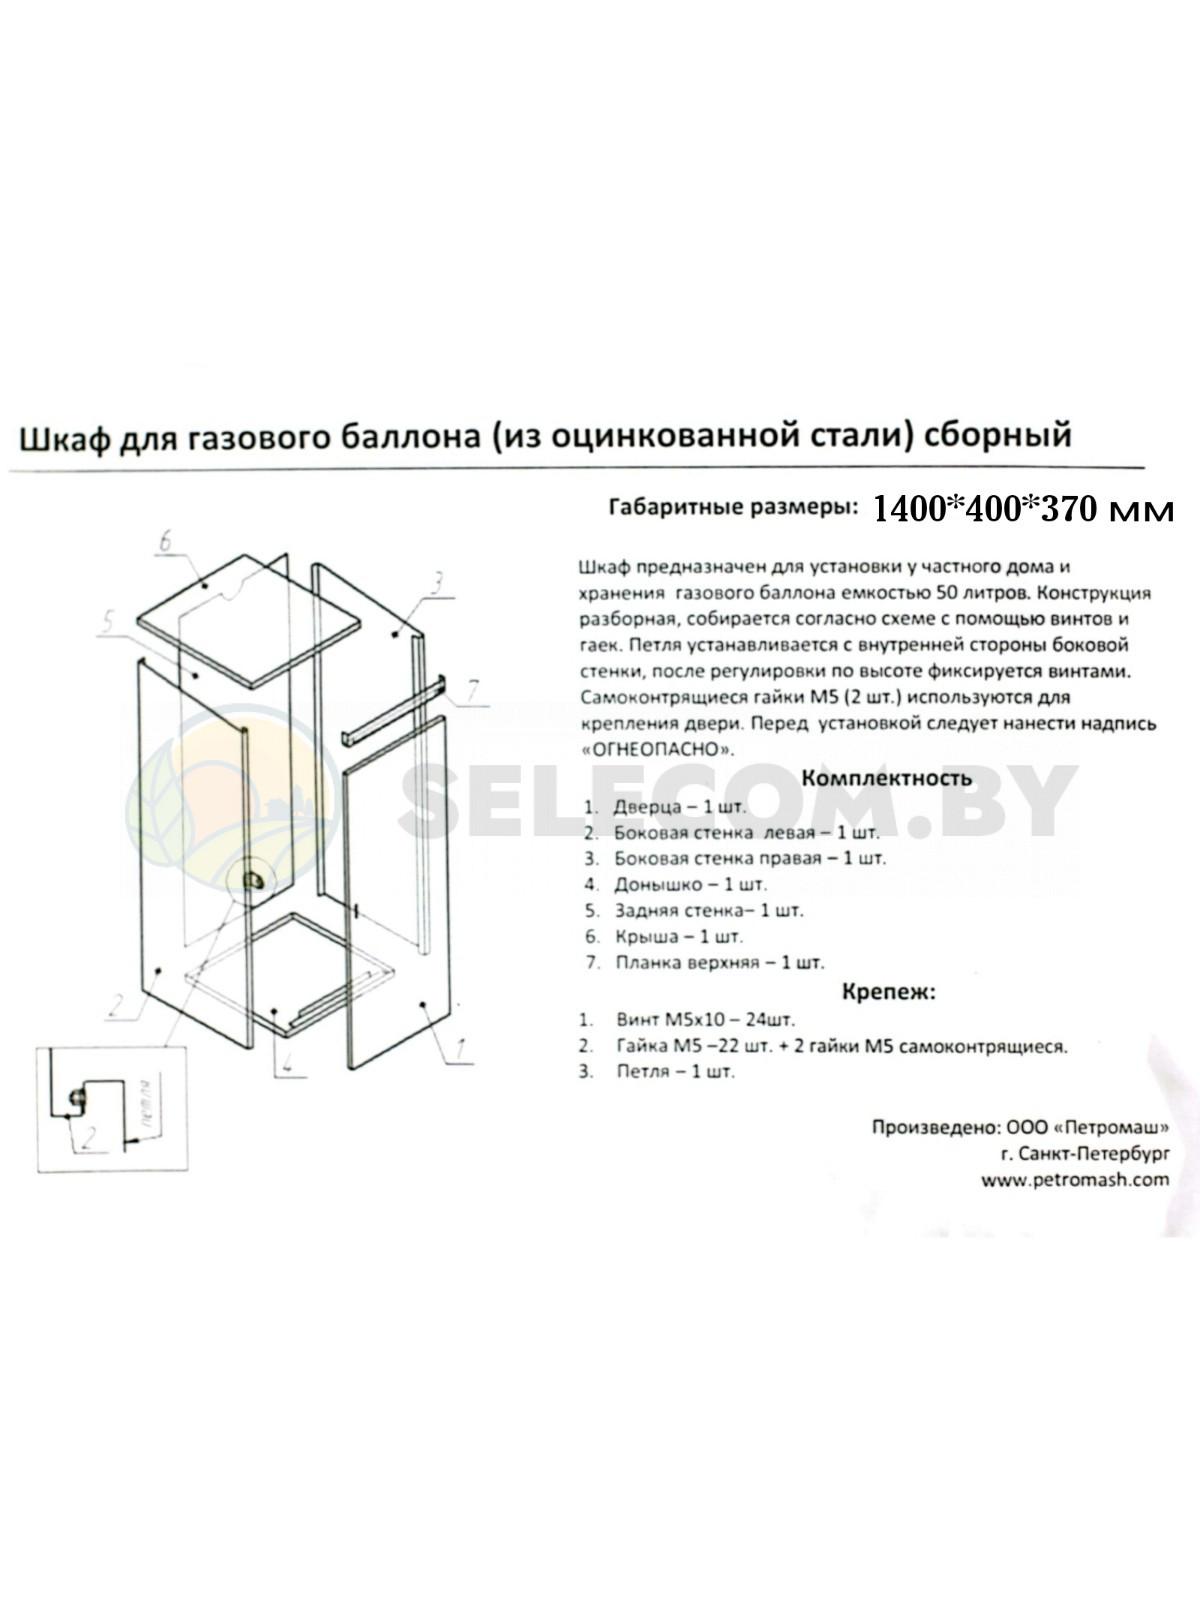 Шкаф для газовых баллонов (античный, 1*50 л.) высота 1,4 м. 22